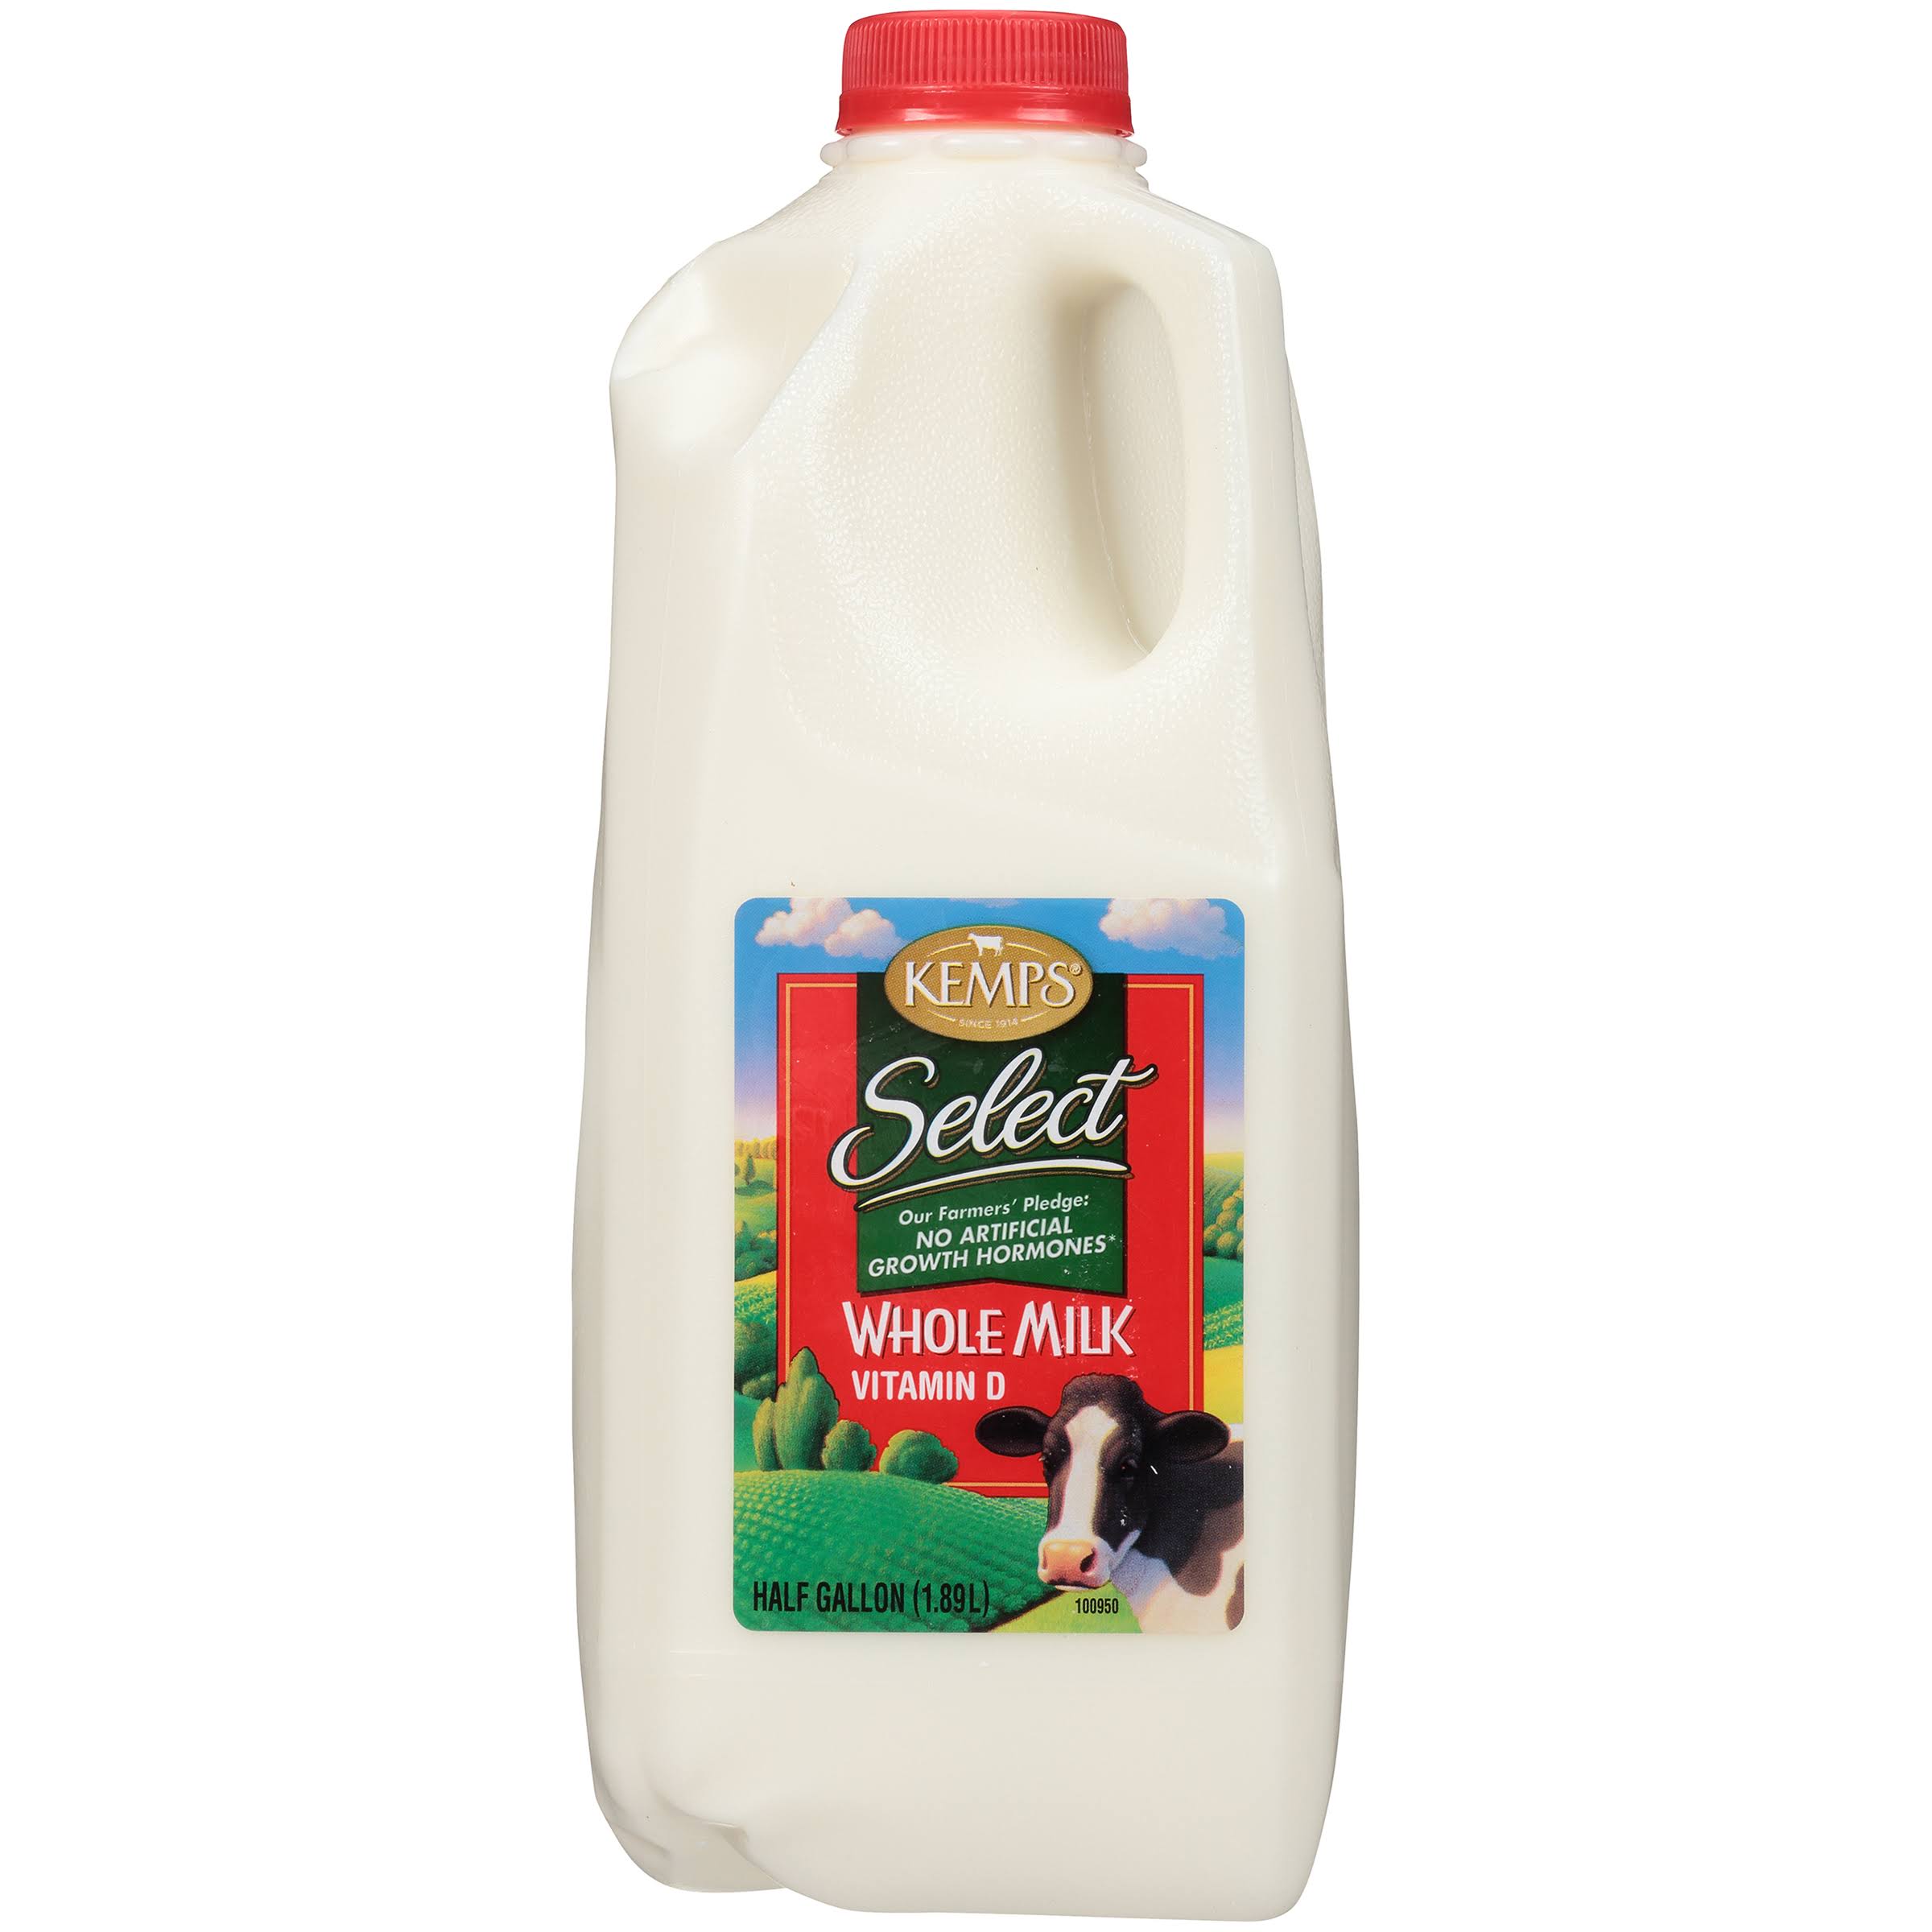 Kemps Select Vitamin D Whole Milk